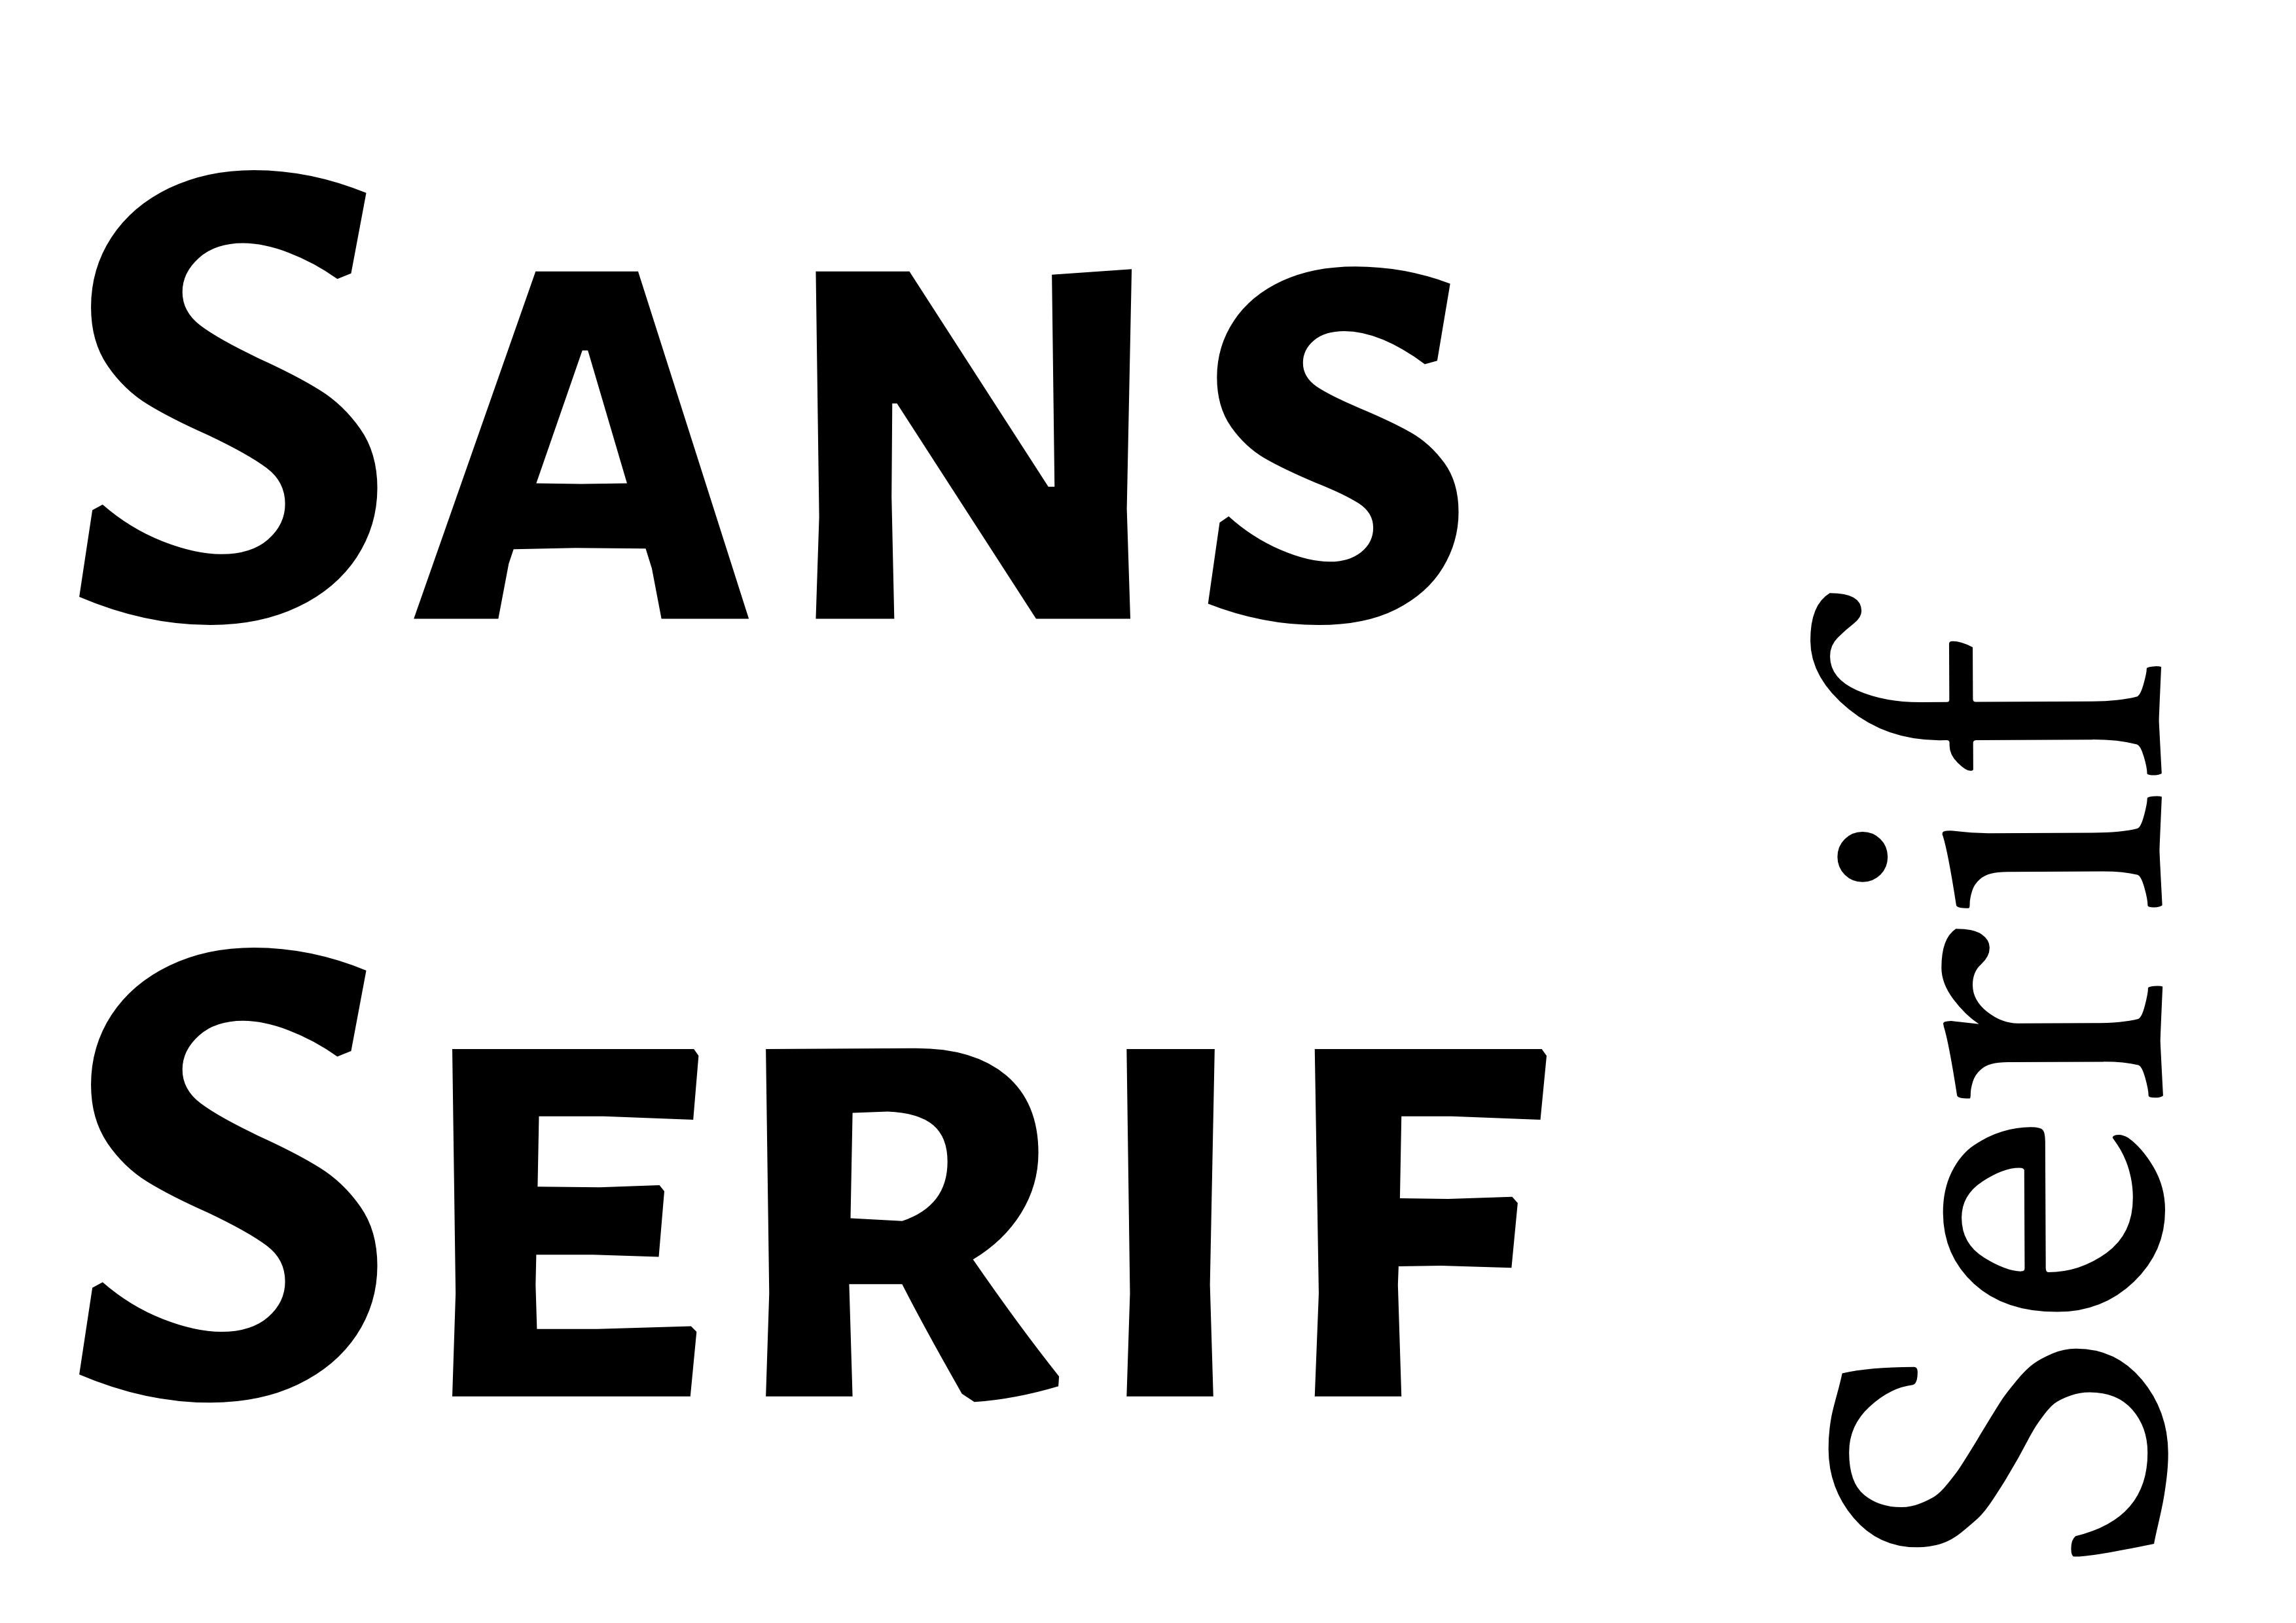 Schriftartenpaarung: „Sans Serif“ in fettem Schwarz auf der linken Seite, „Serif“ in der rechten unteren Ecke kleiner gedreht